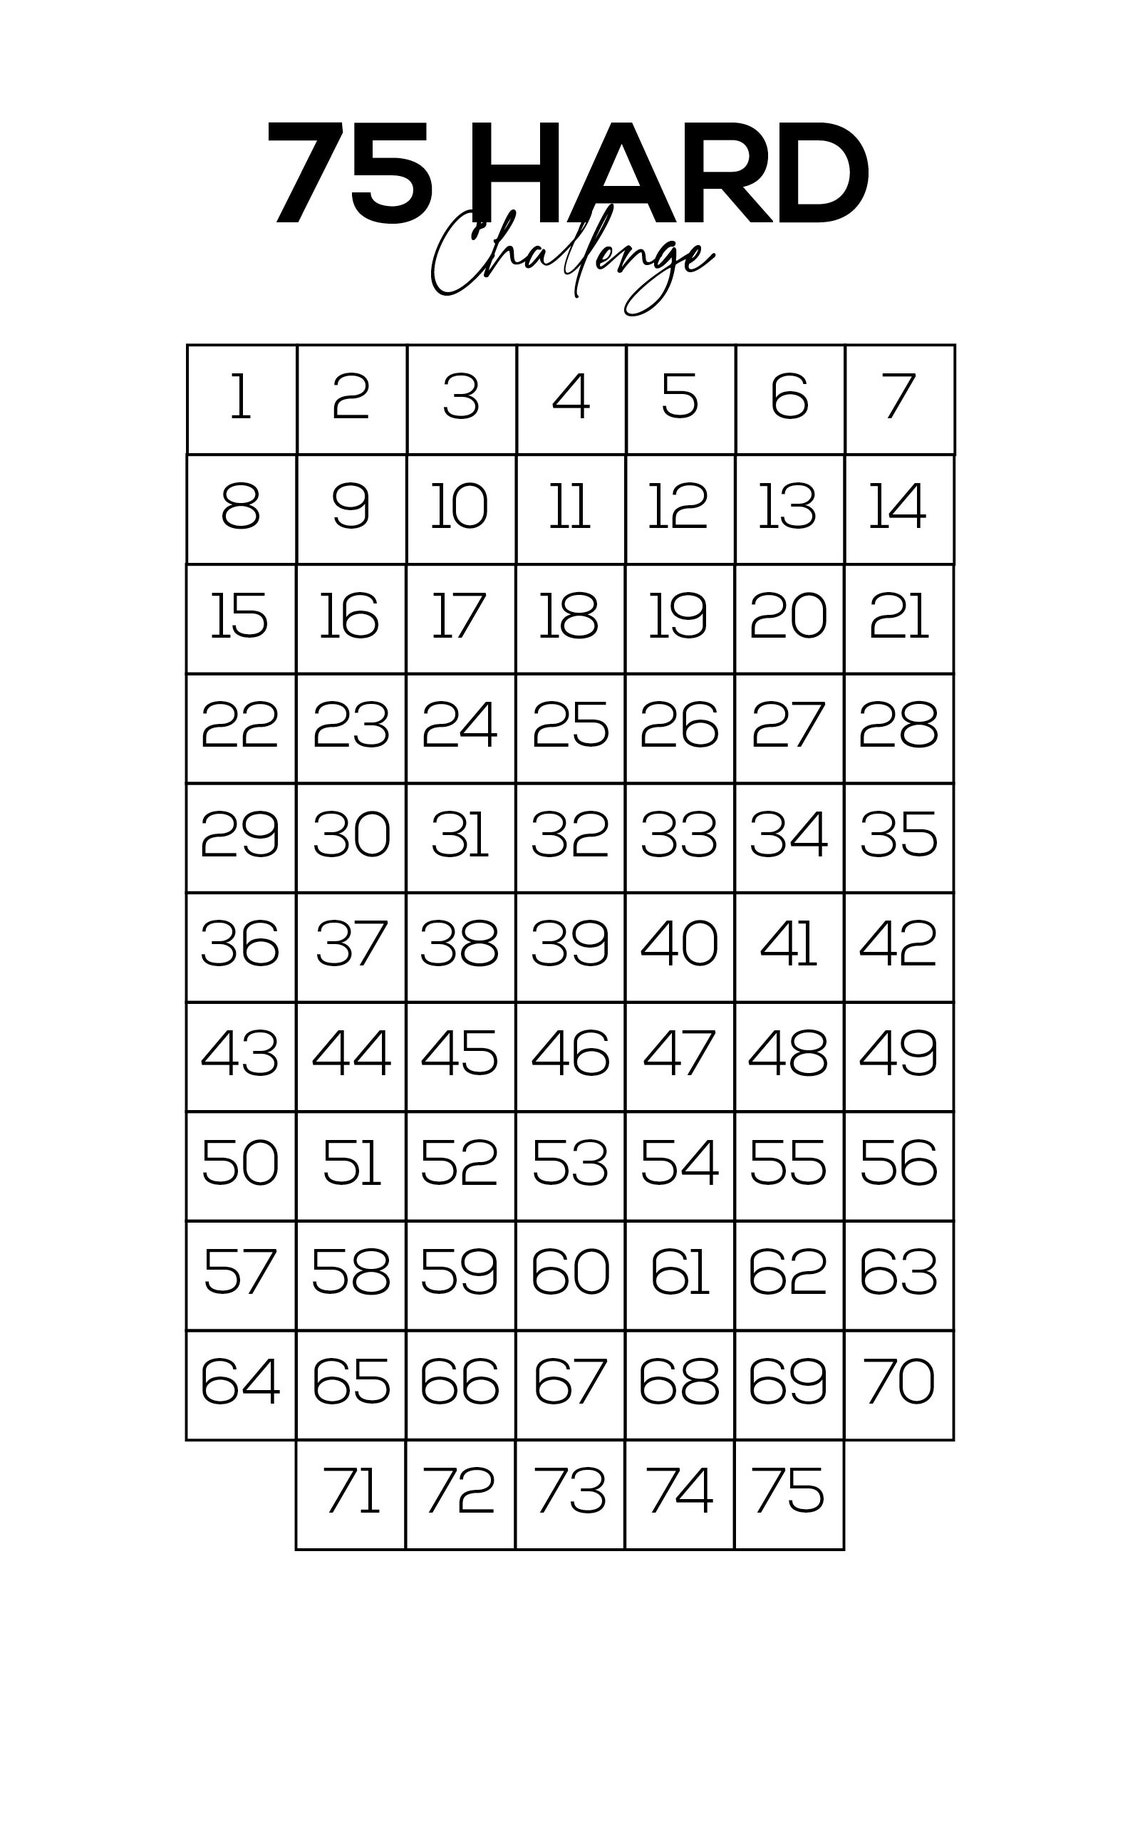 75-hard-challenge-printable-chart